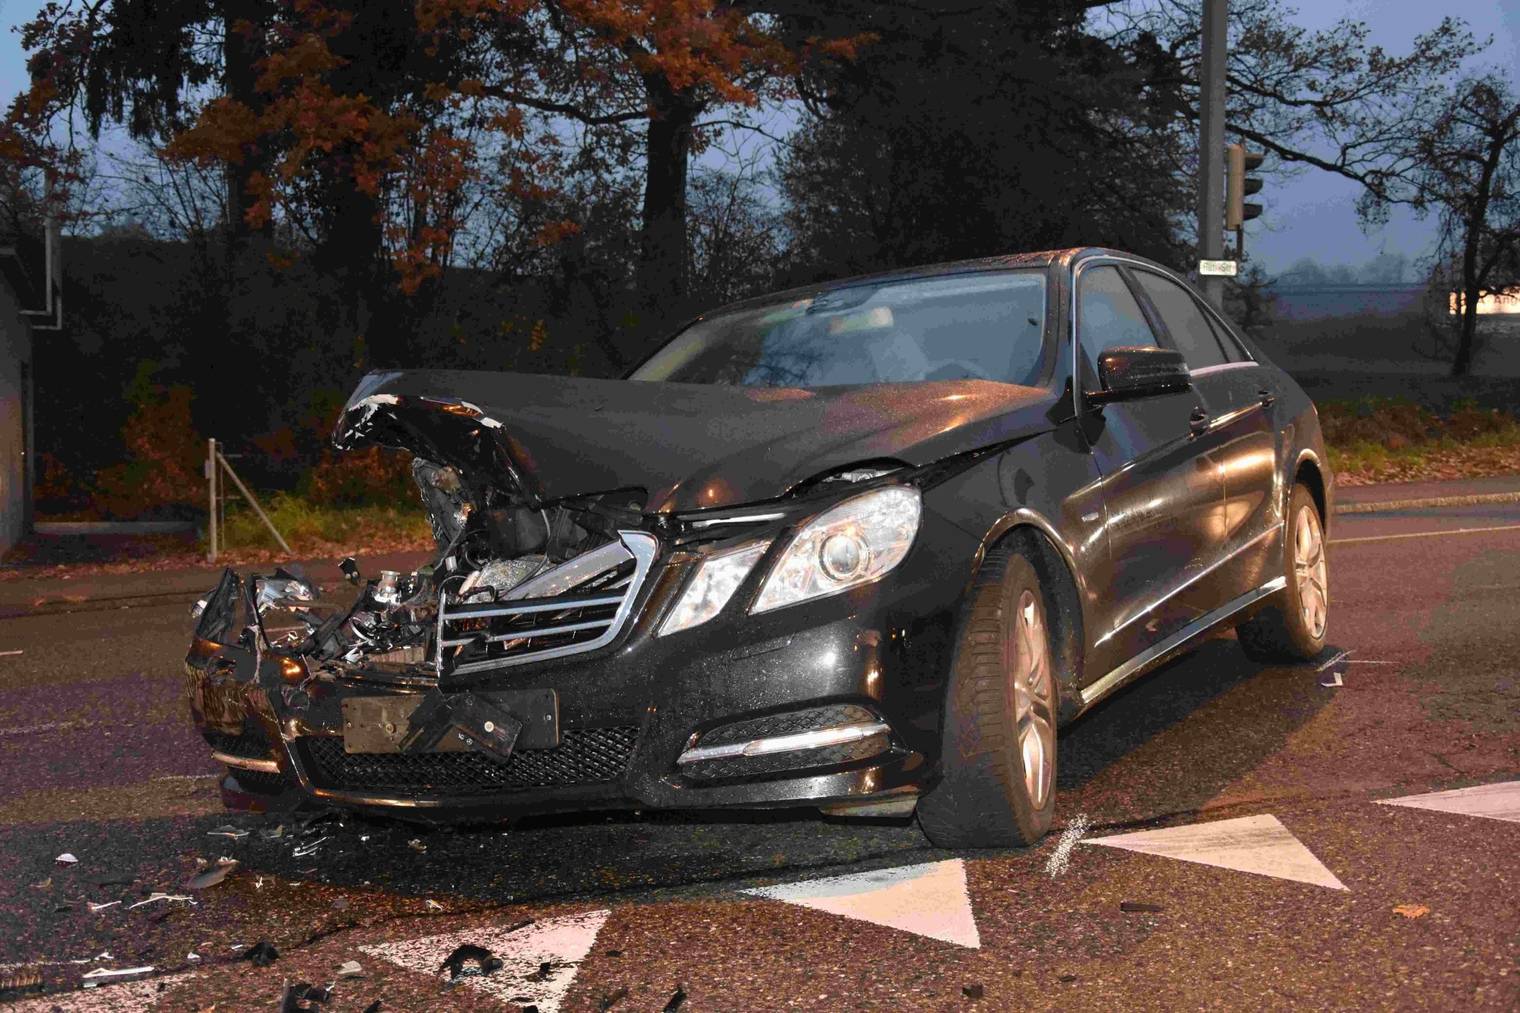 An beiden Autos ist insgesamt einen Sachschaden von mehreren 10'000 Franken entstanden. (Bild: Kapo SG)